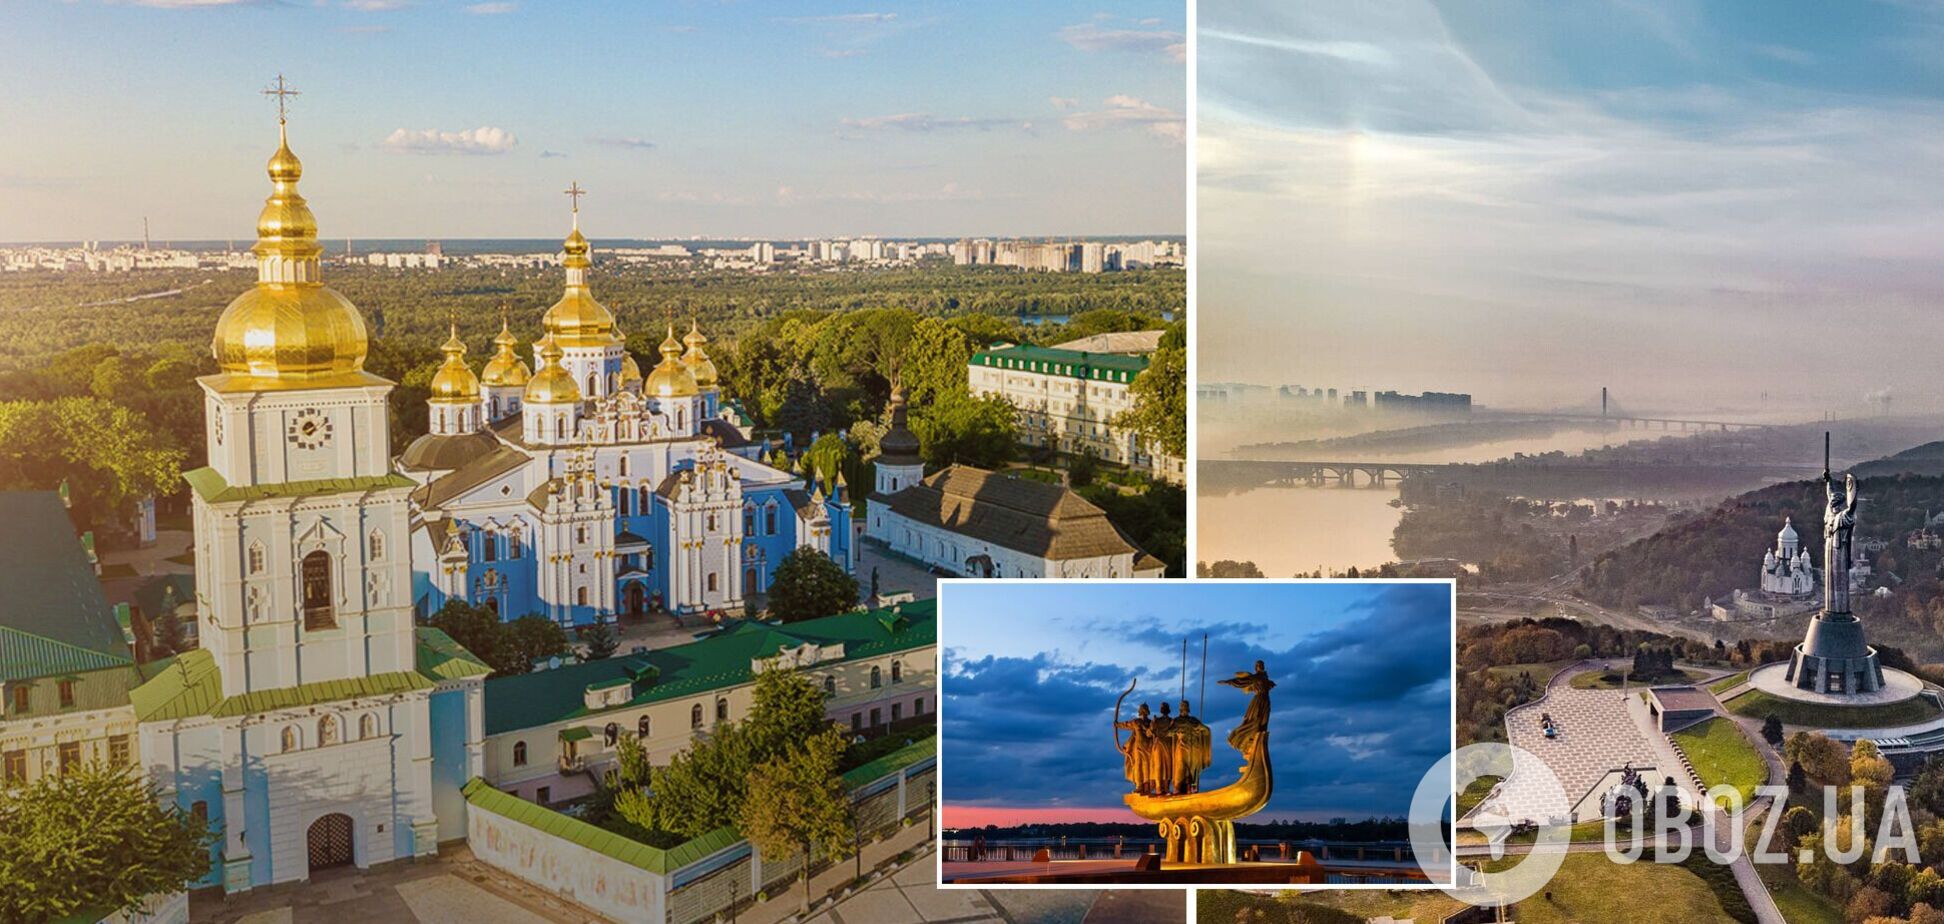 Київ потрапив у сотню найкращих та інвестиційно привабливих міст світу за даними рейтингу Best Cities Reports 2021